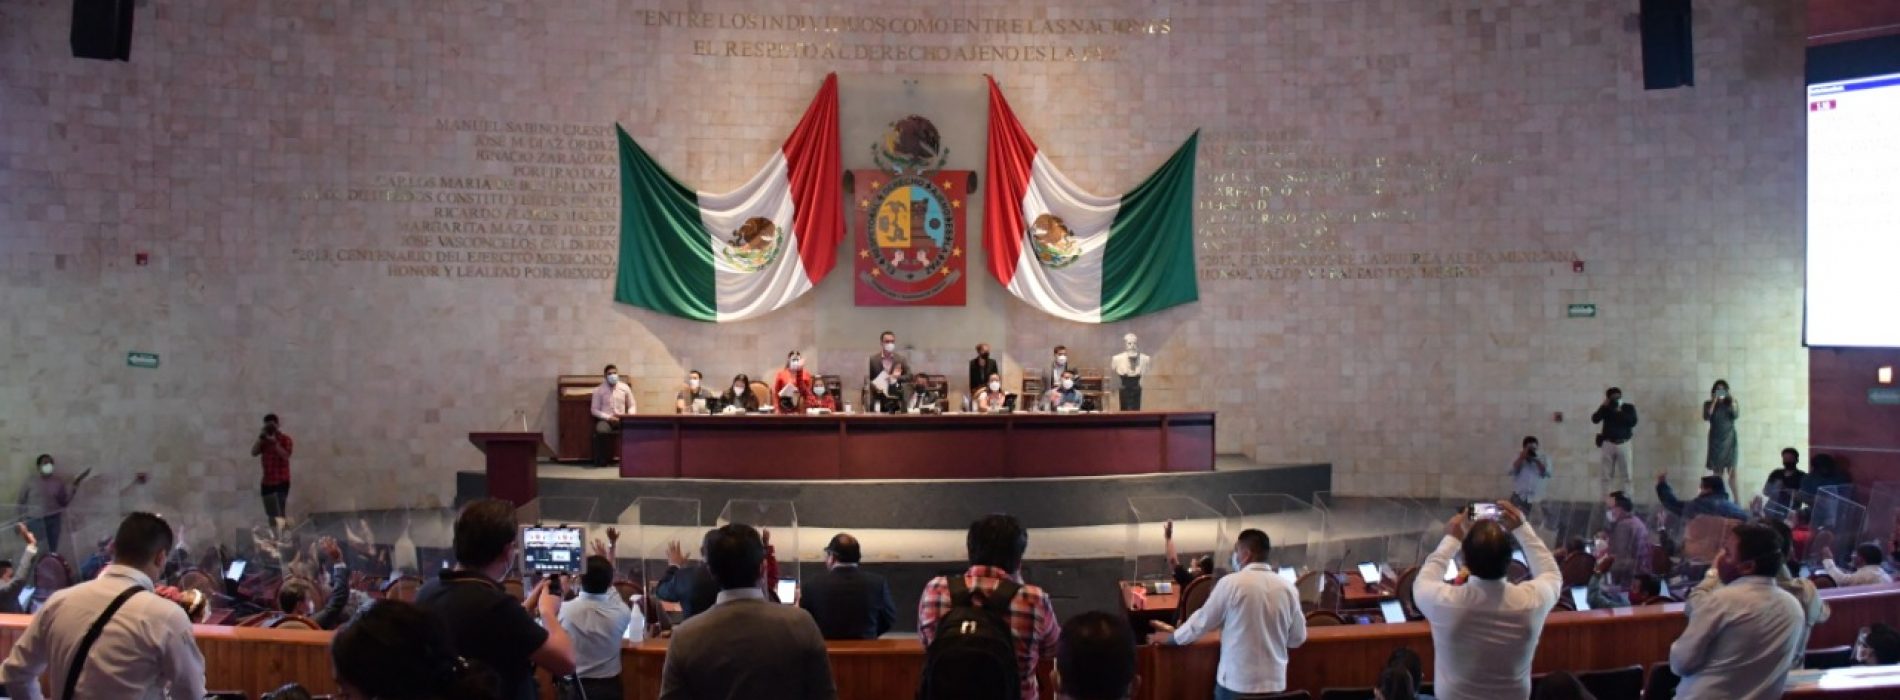 Busca Congreso ordenar encierros y depósitos vehiculares en Oaxaca